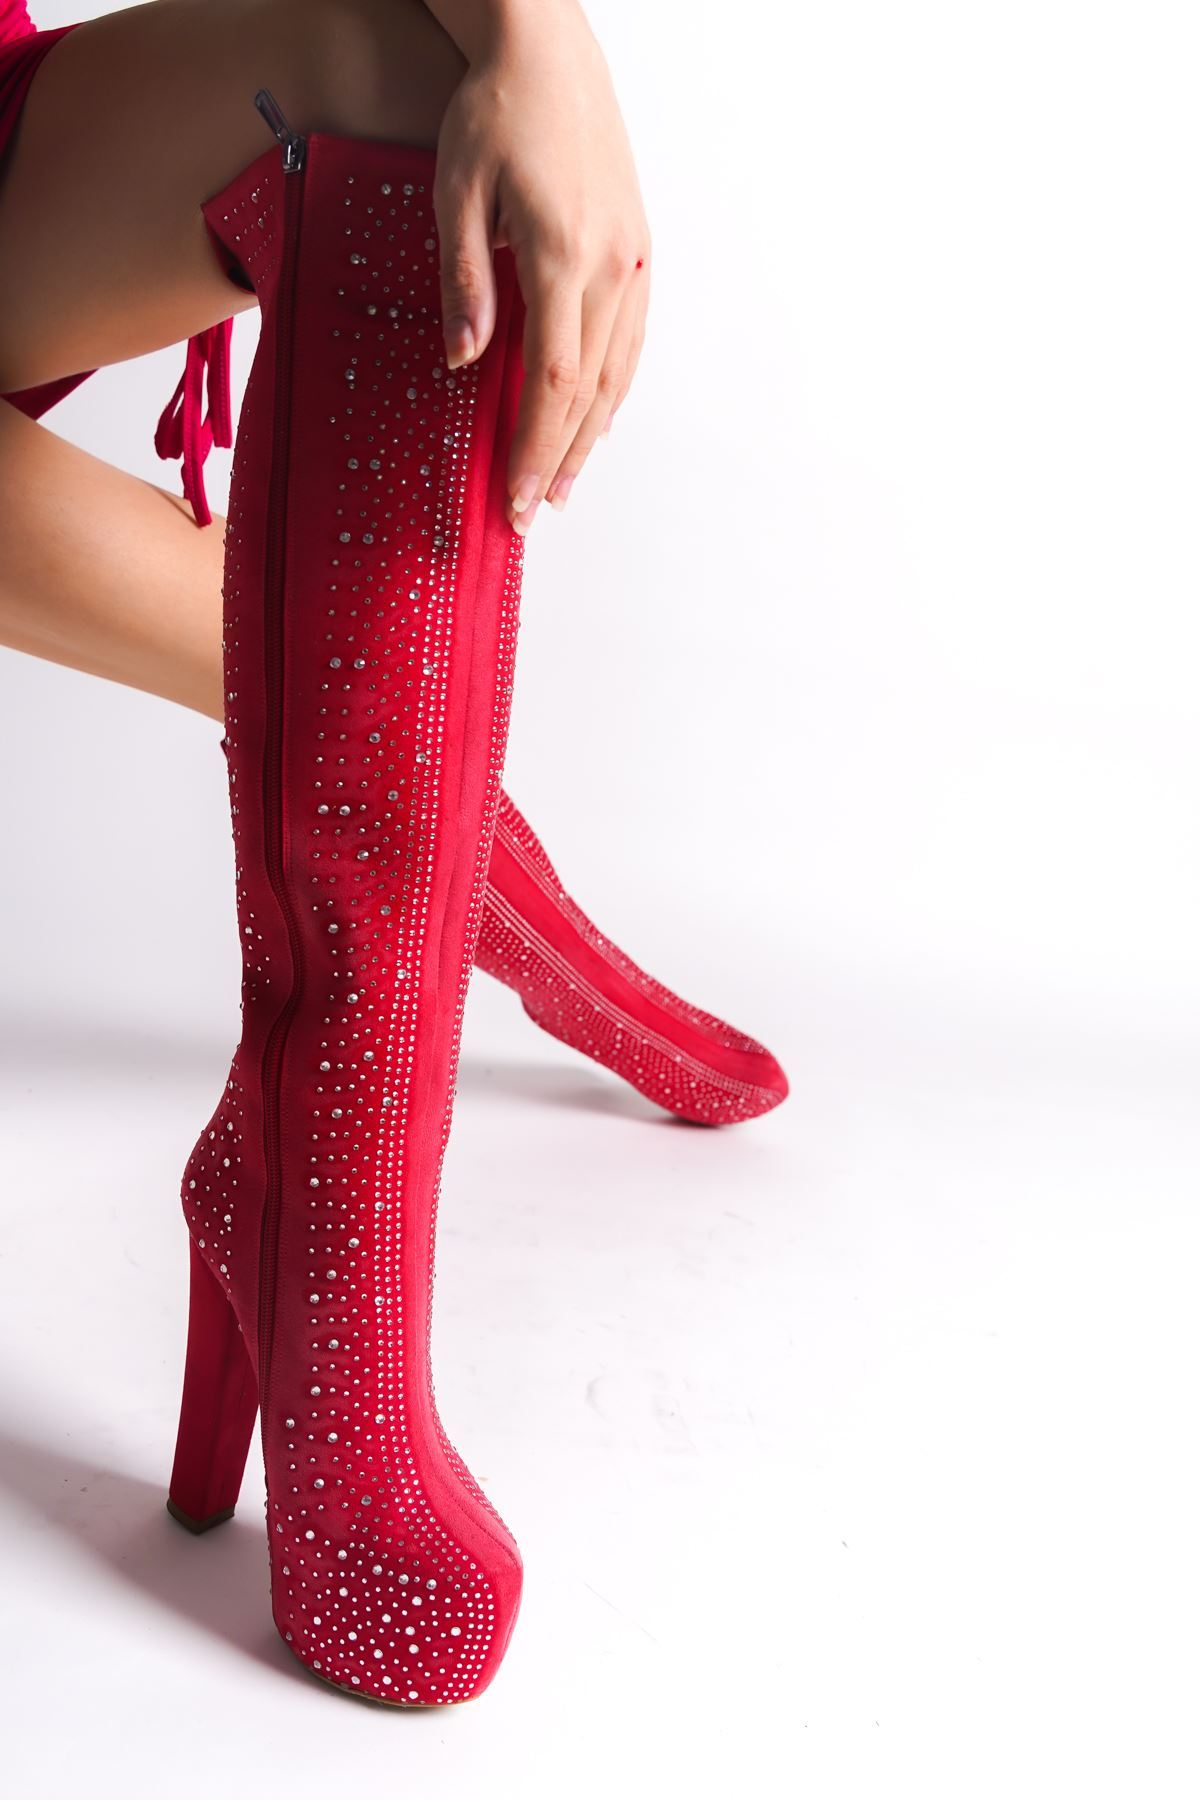 Catty Kırmızı Süet Özel Tasarım Parlak Taşlı Yüksek Topuklu Diz Altı Kadın Çizme